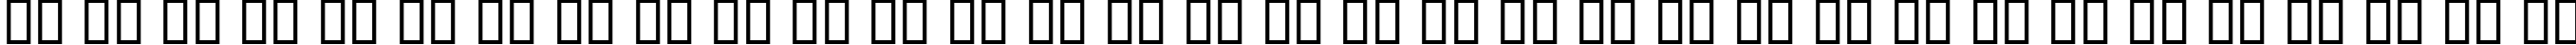 Пример написания русского алфавита шрифтом KacstBook